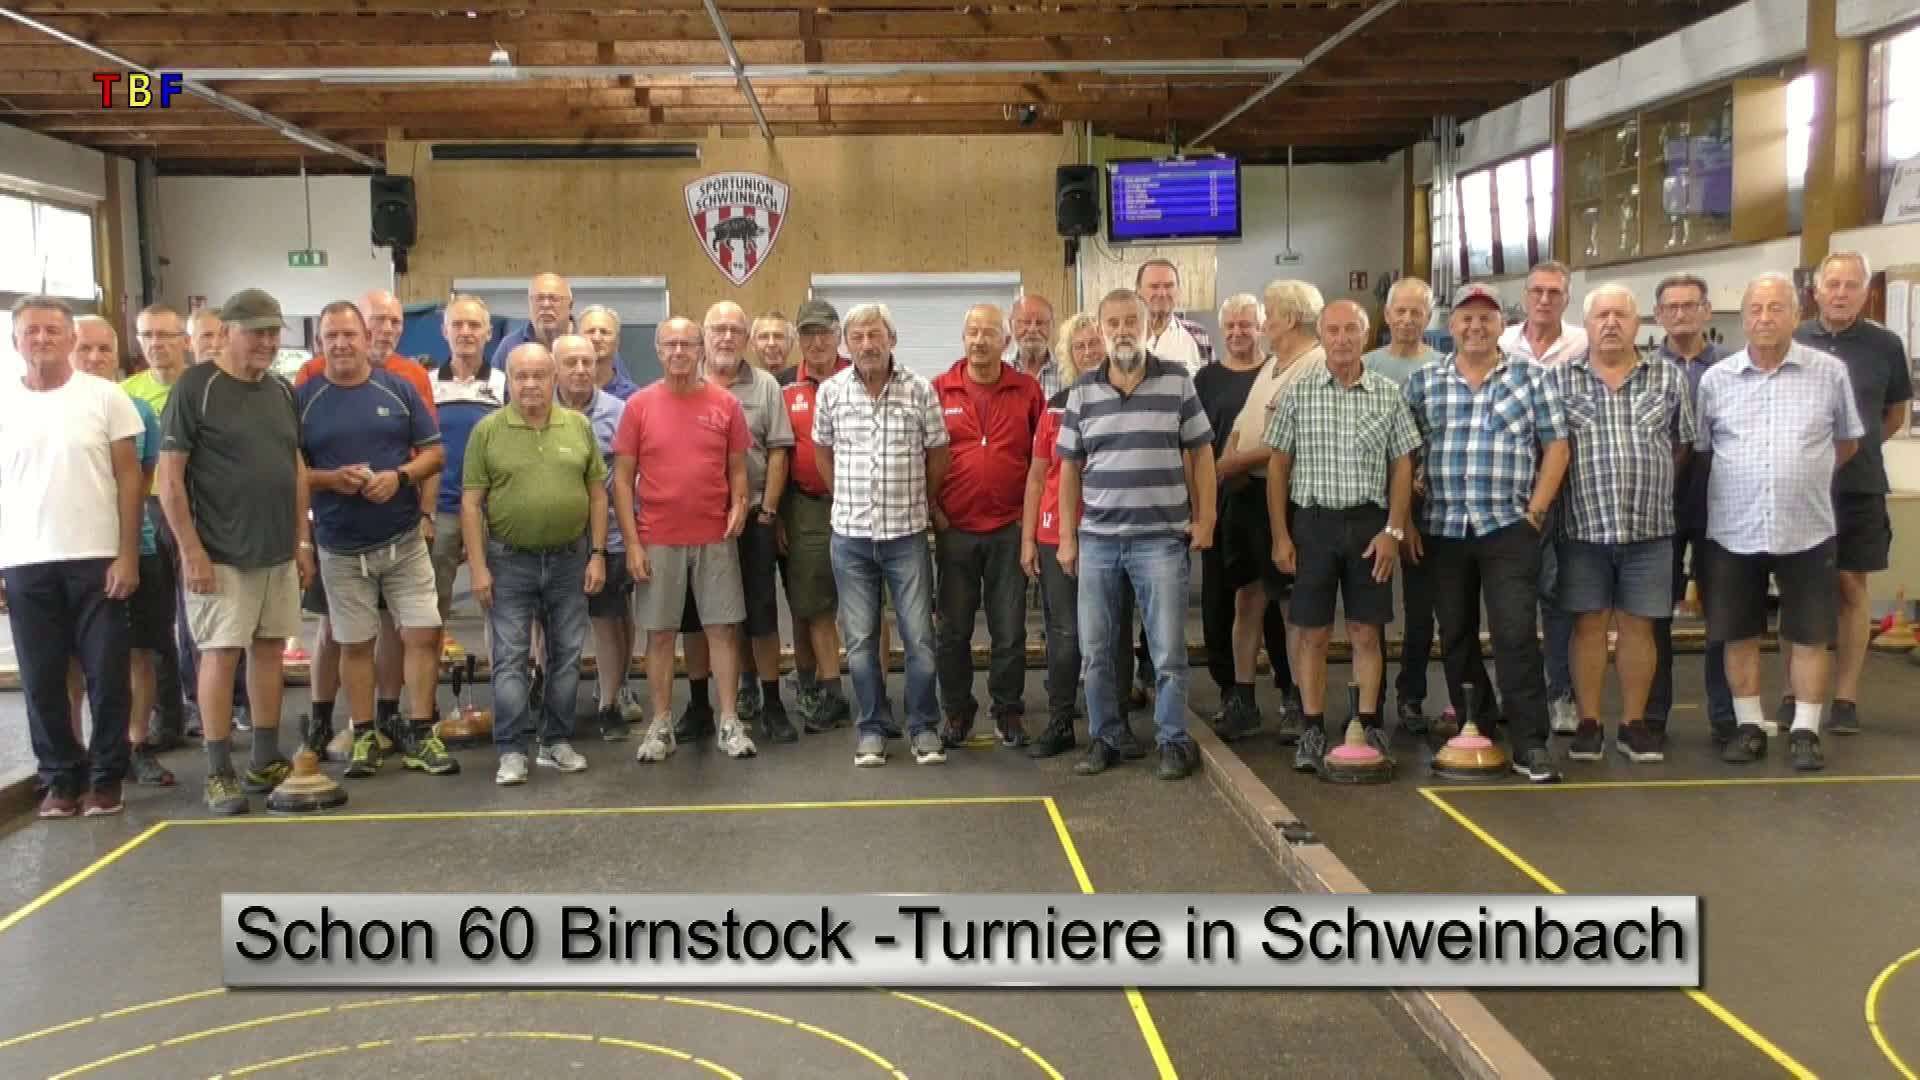 Schon 60 Birnstock-Turniere in Schweinbach